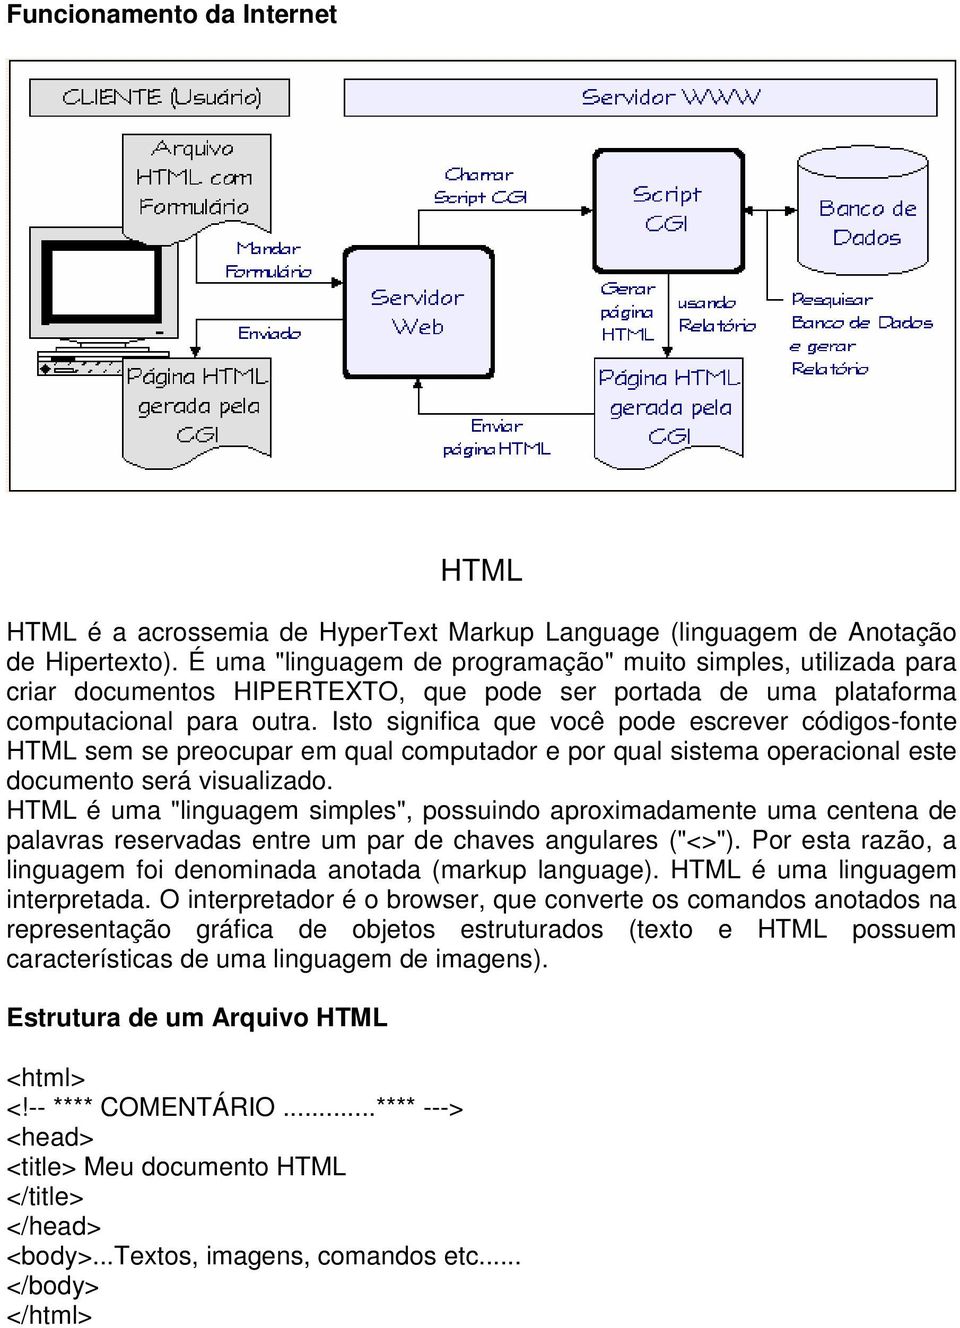 Isto significa que você pode escrever códigos-fonte HTML sem se preocupar em qual computador e por qual sistema operacional este documento será visualizado.